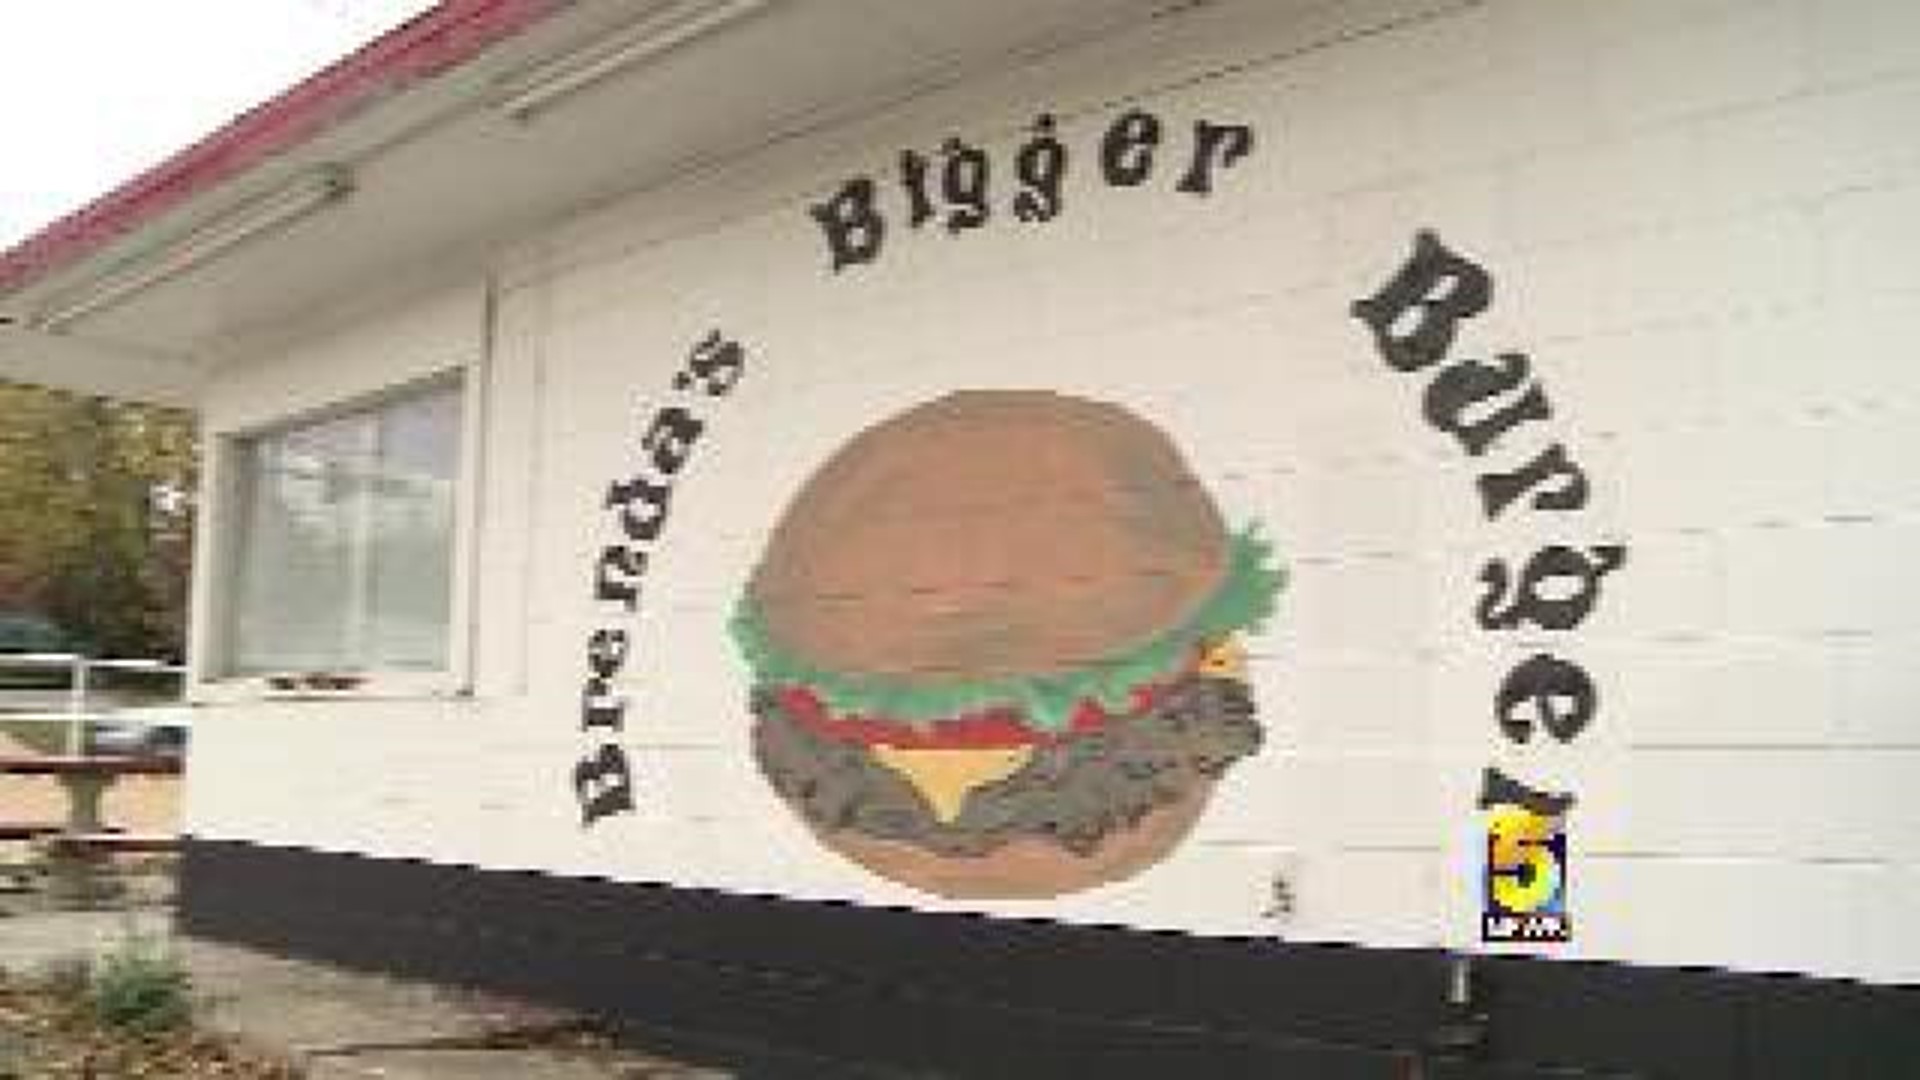 Brenda’s Bigger Burger Property Has A New Owner